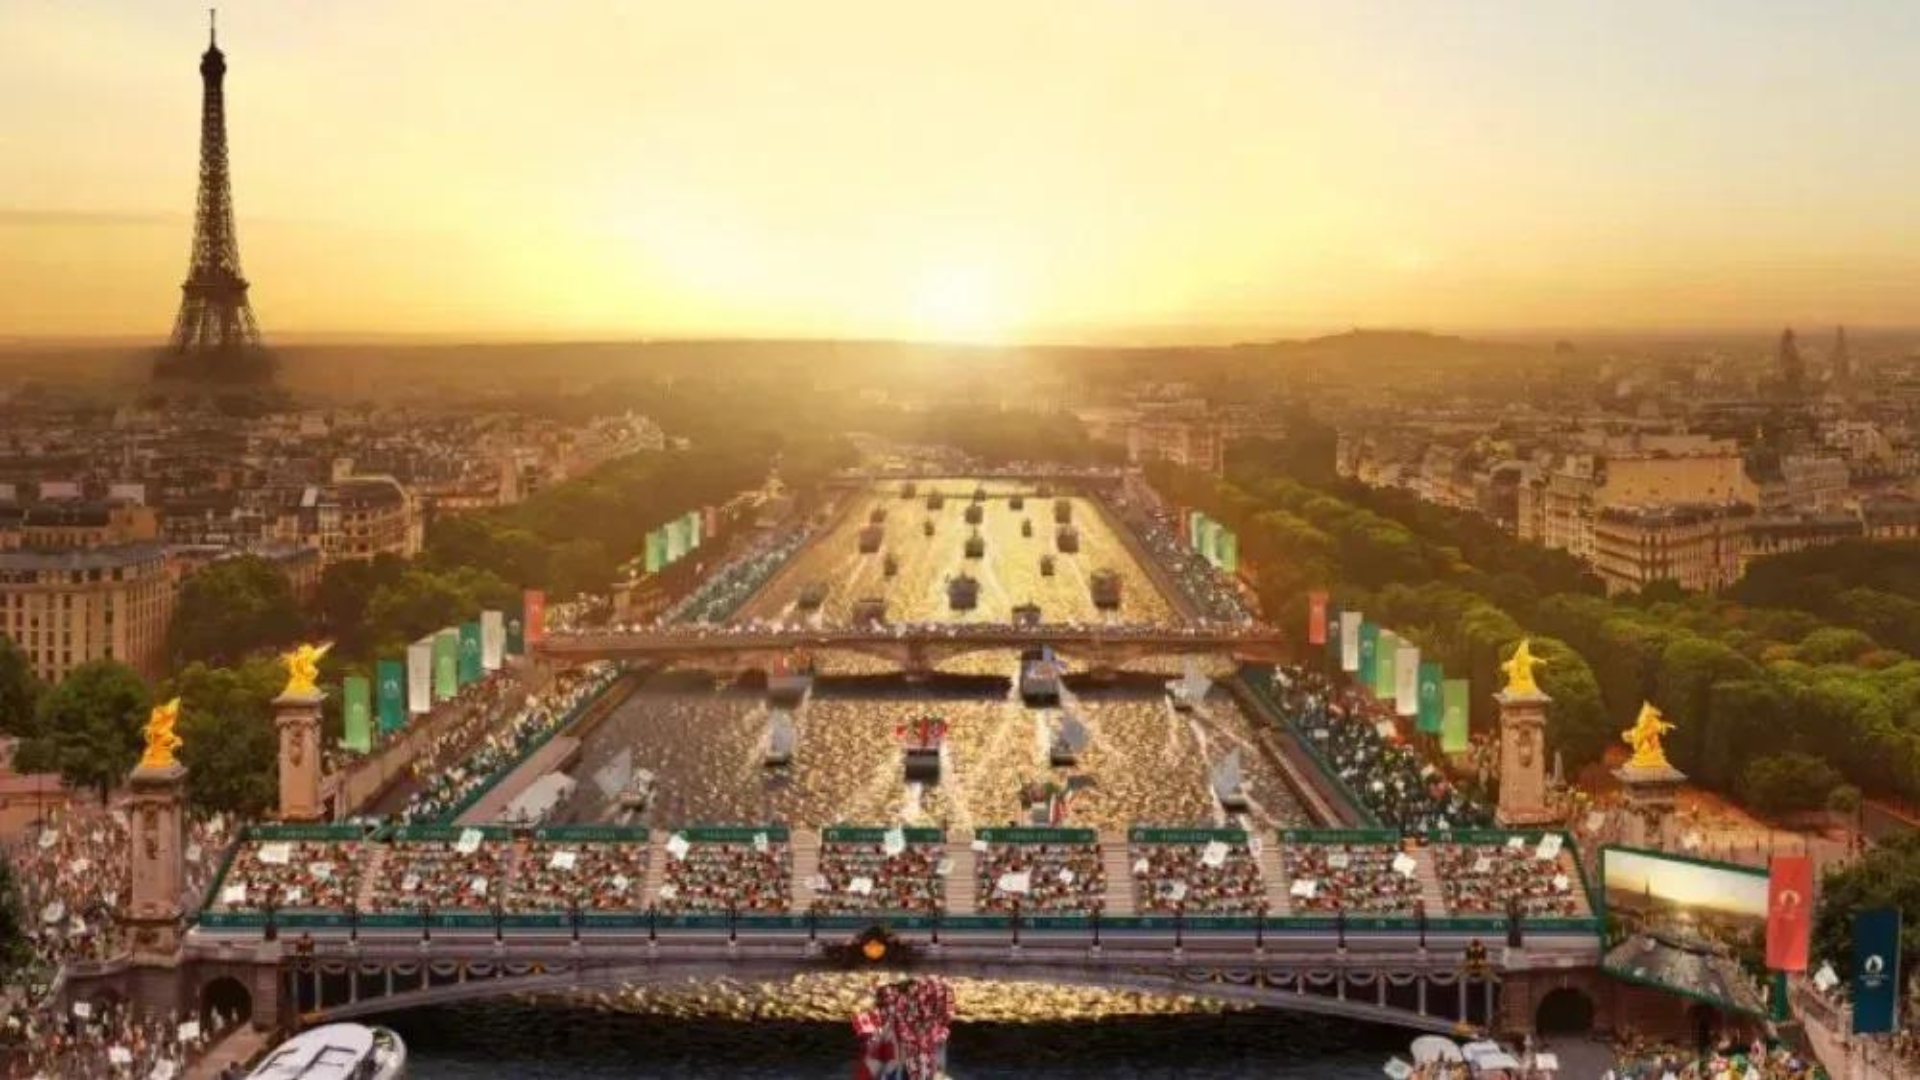 Olimpíadas: teste técnico para abertura reúne 55 barcos no rio Sena